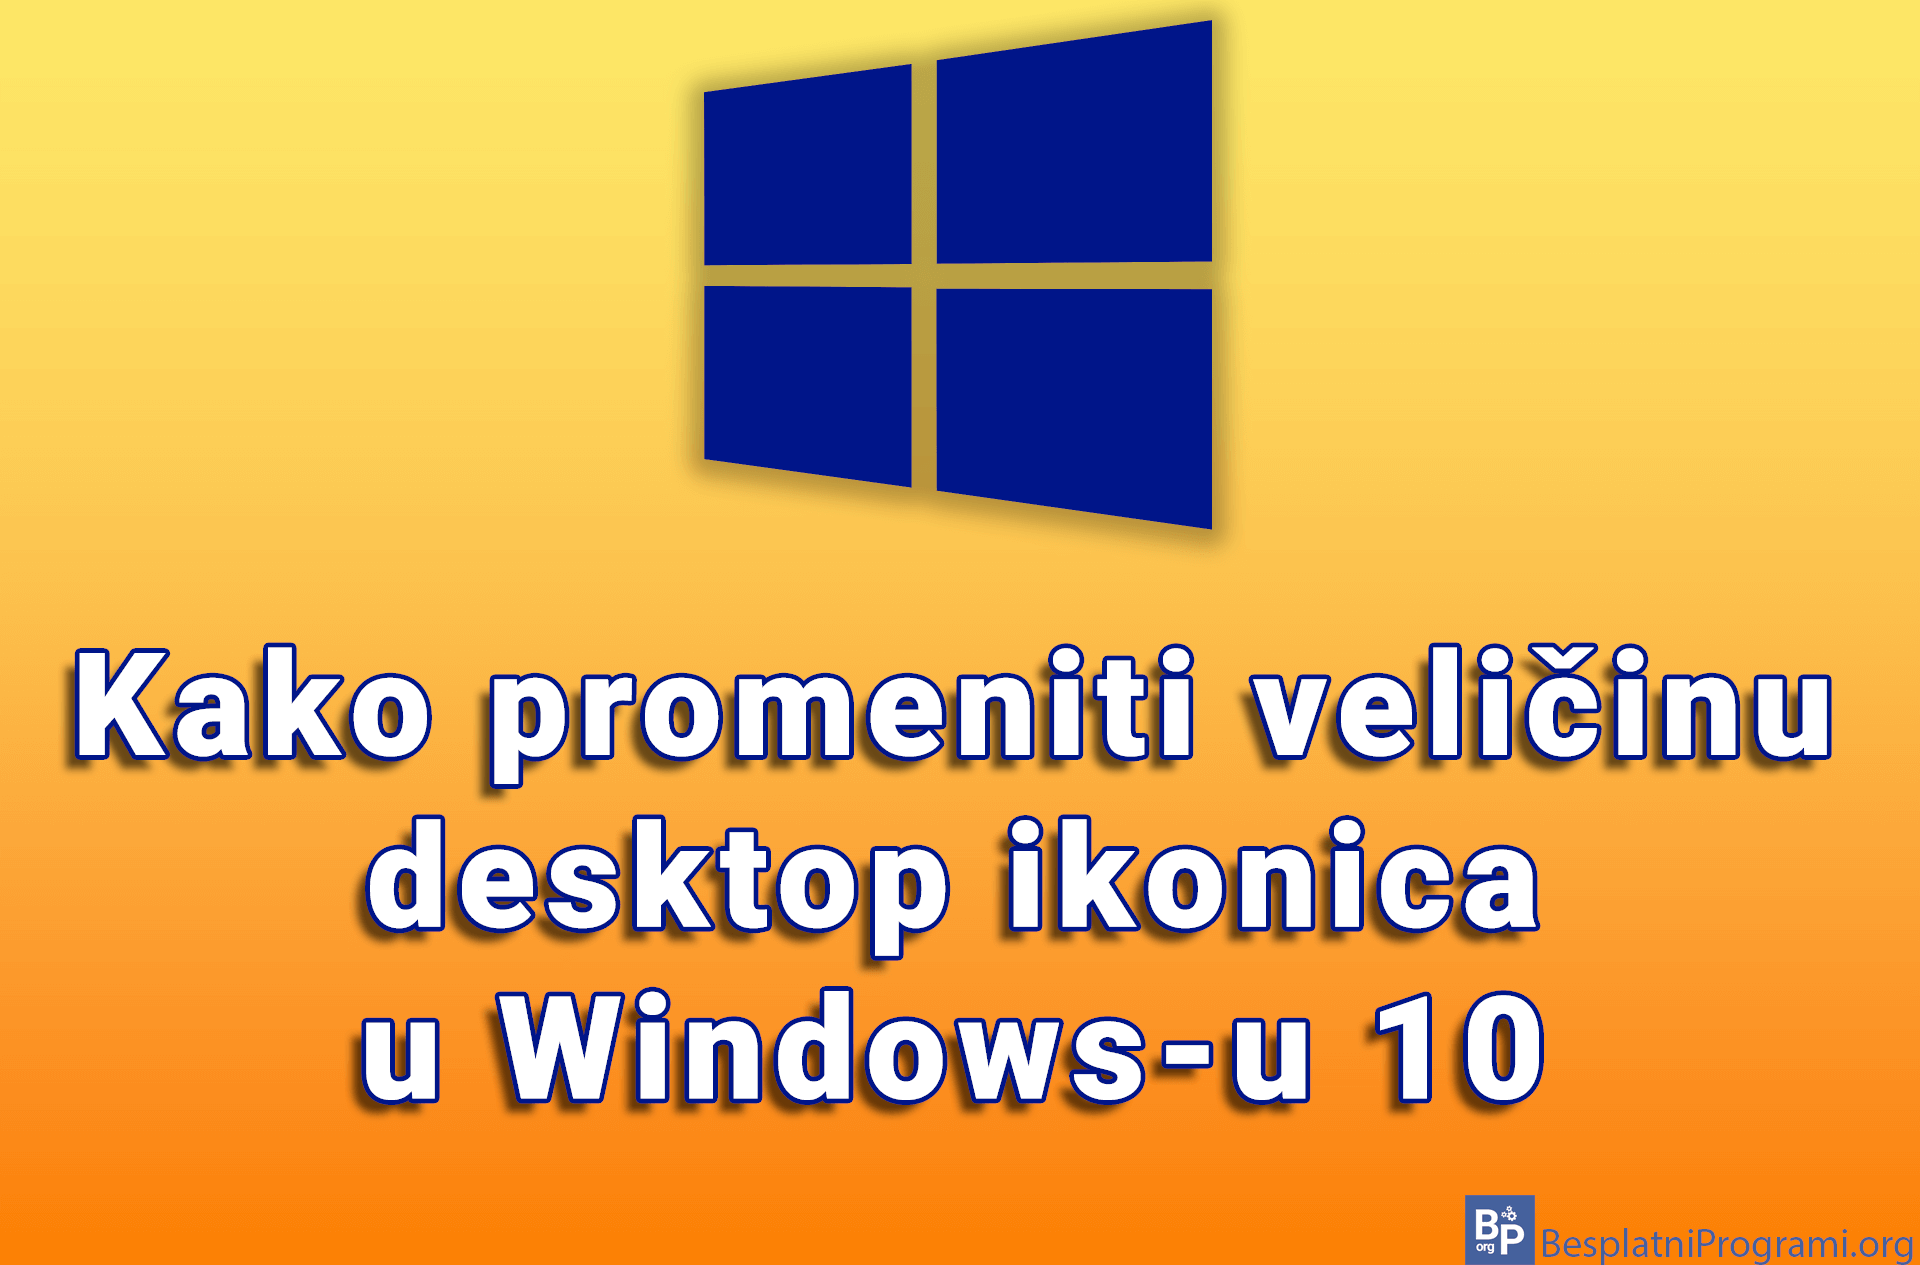 Kako promeniti veličinu desktop ikonica u Windows-u 10